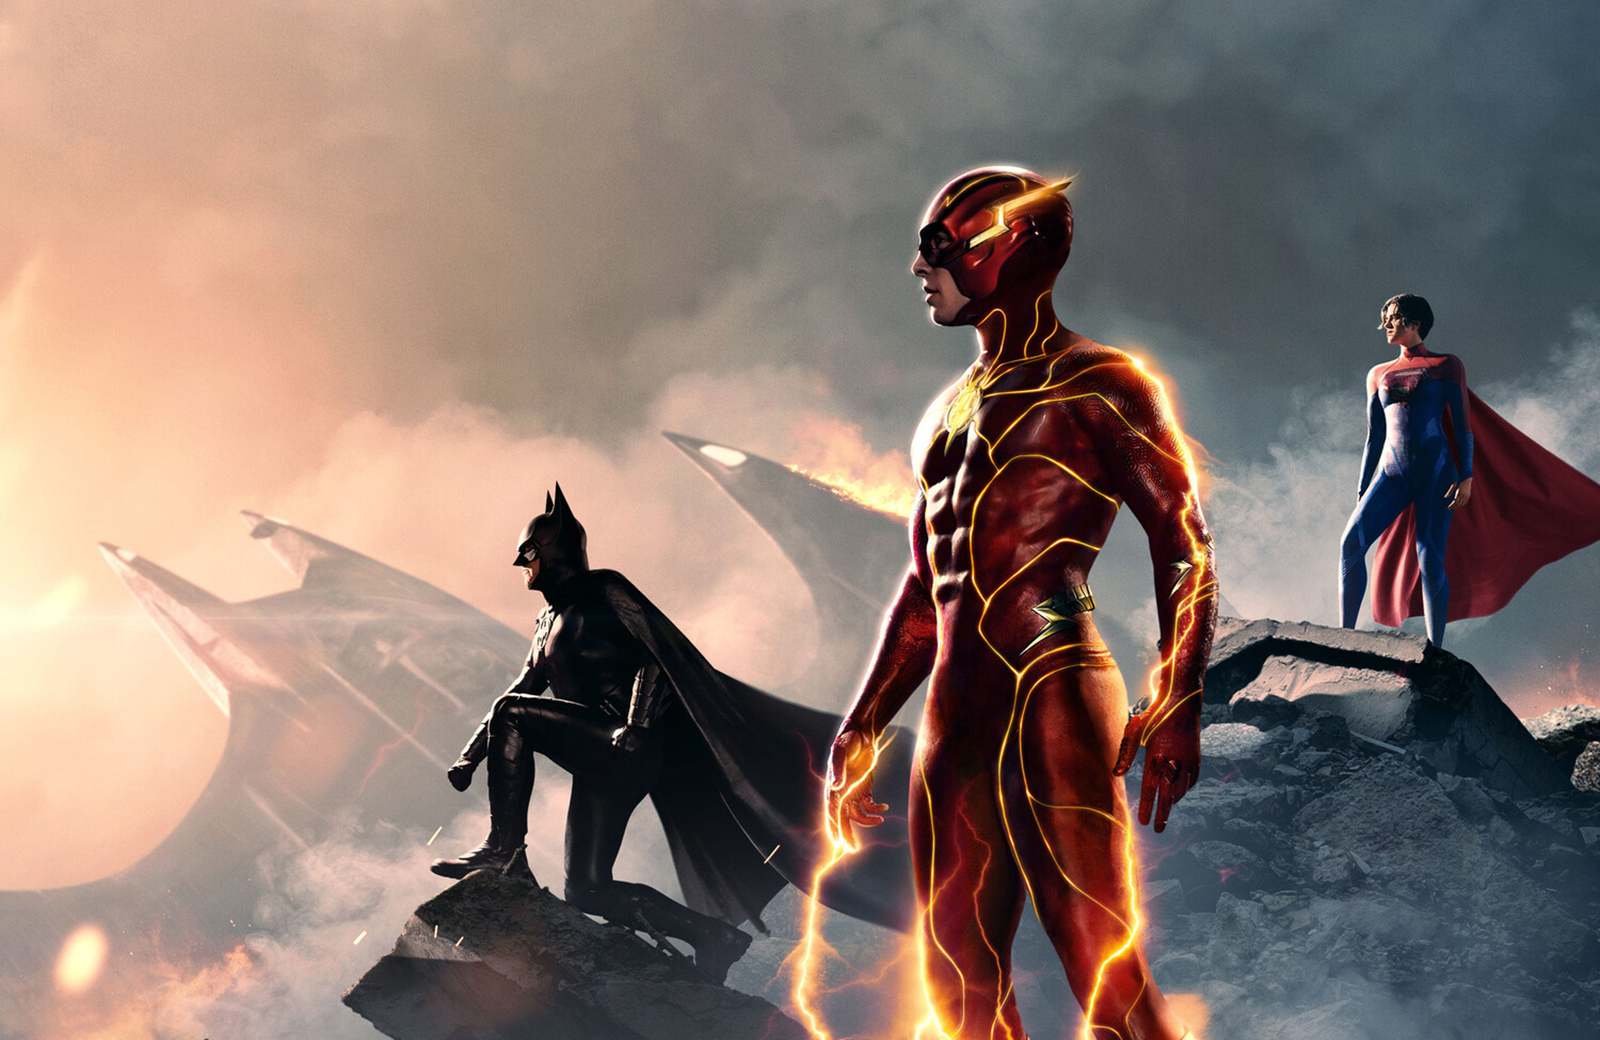 Надшвидкісна прем'єра мчить на екрани домашніх пристроїв: "The Flash" стартує на стрімінгу вже цього місяця!